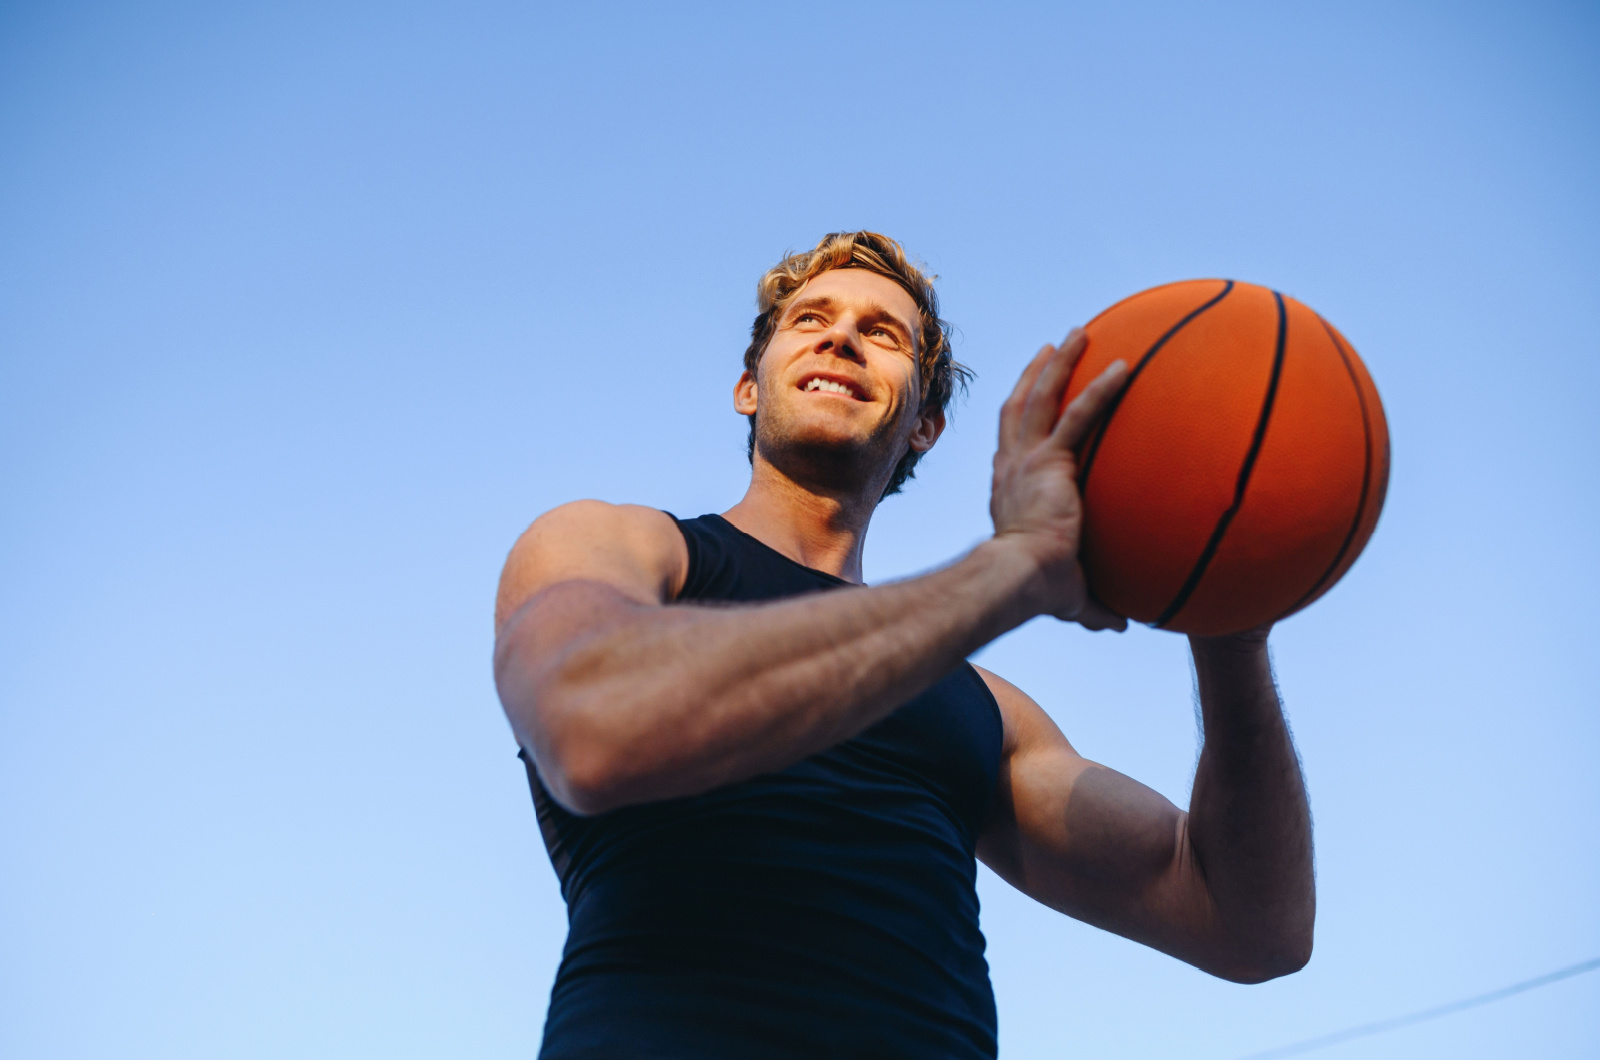 Mann spielt Basketball